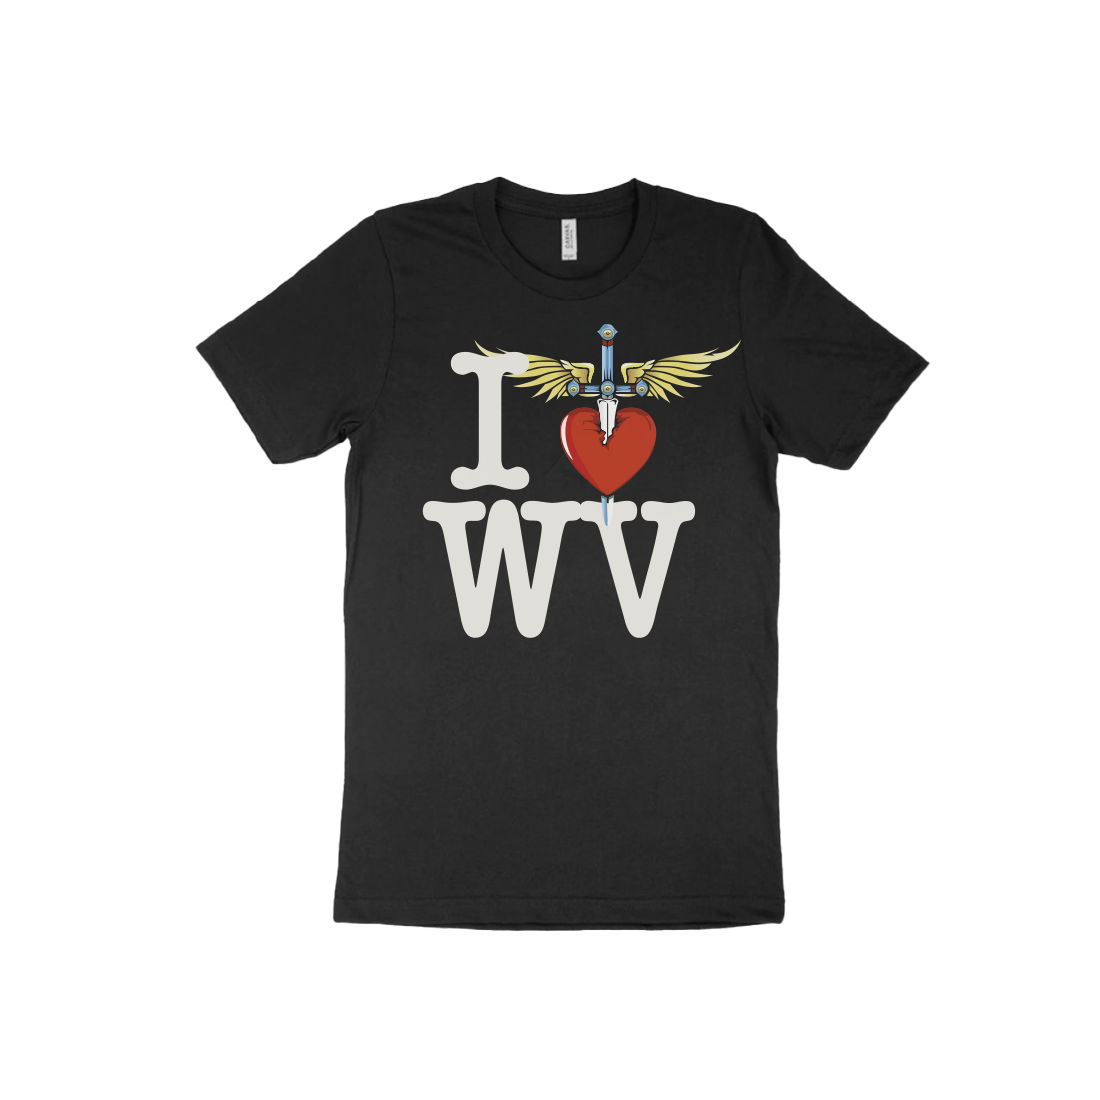 I Heart Black T-Shirt - WV